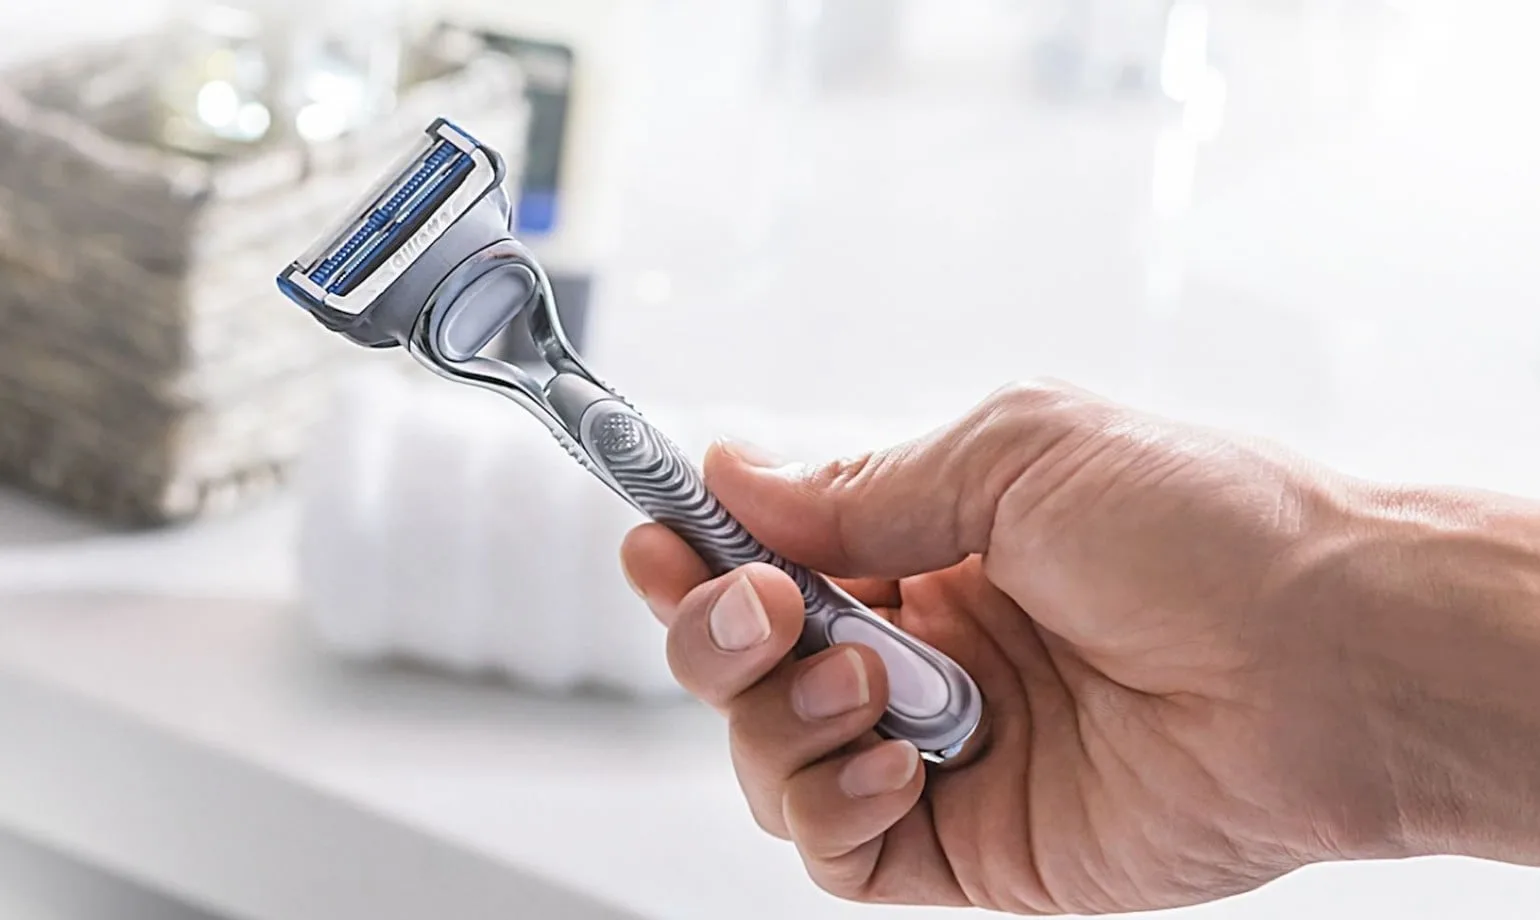 Ao barbear-se contra a textura, escolha uma lâmina adequada à sua pele e certifique-se de que as lâminas estejam afiadas e limpas